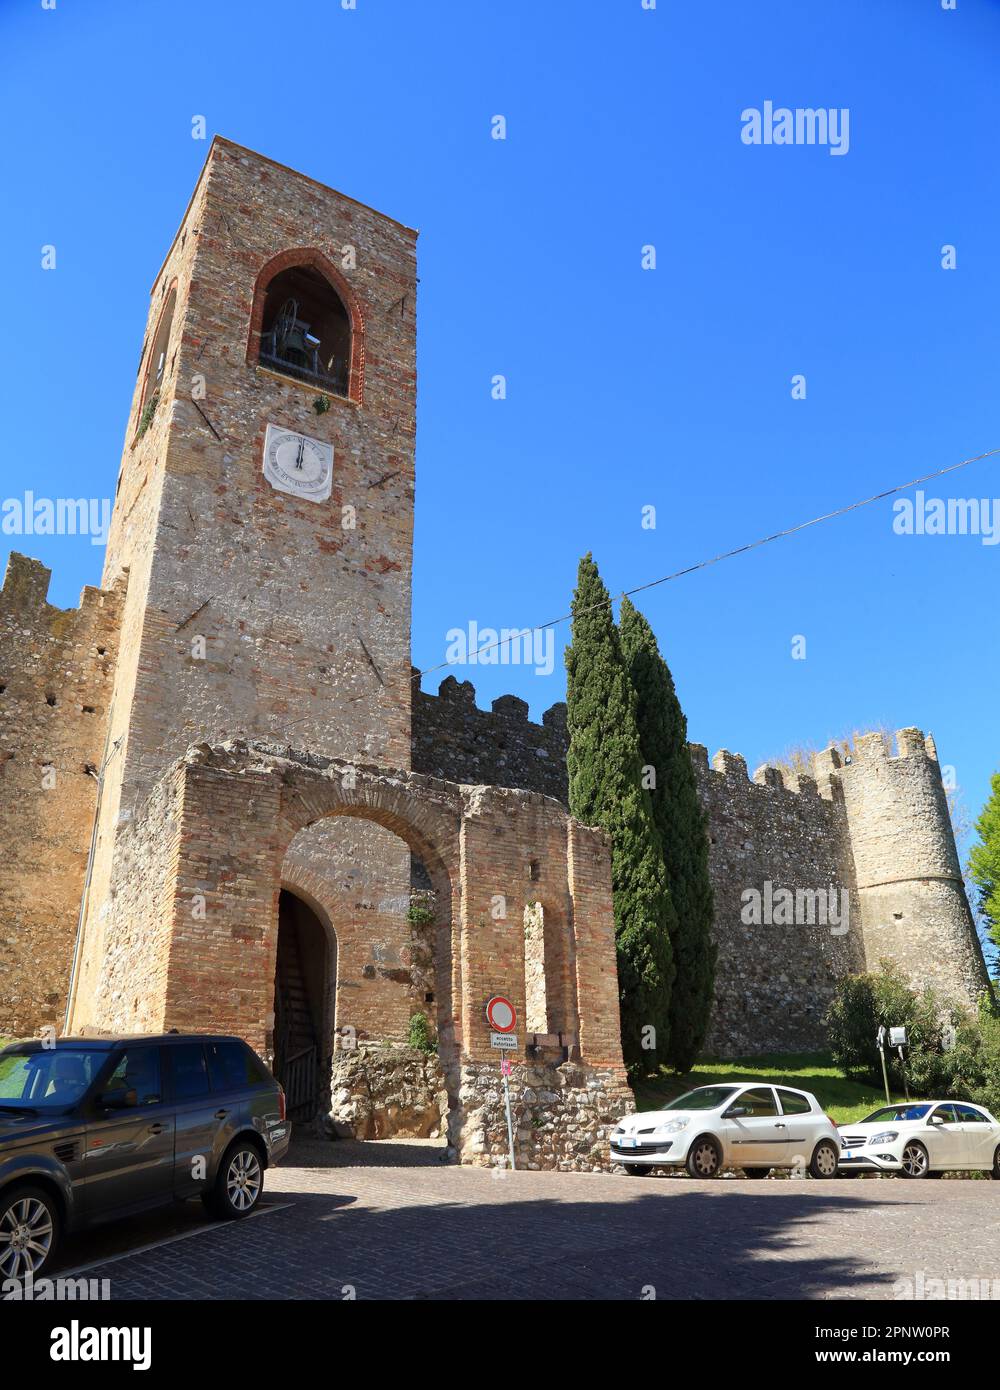 Castle of Moniga. Castello di Moniga del Garda. Stock Photo